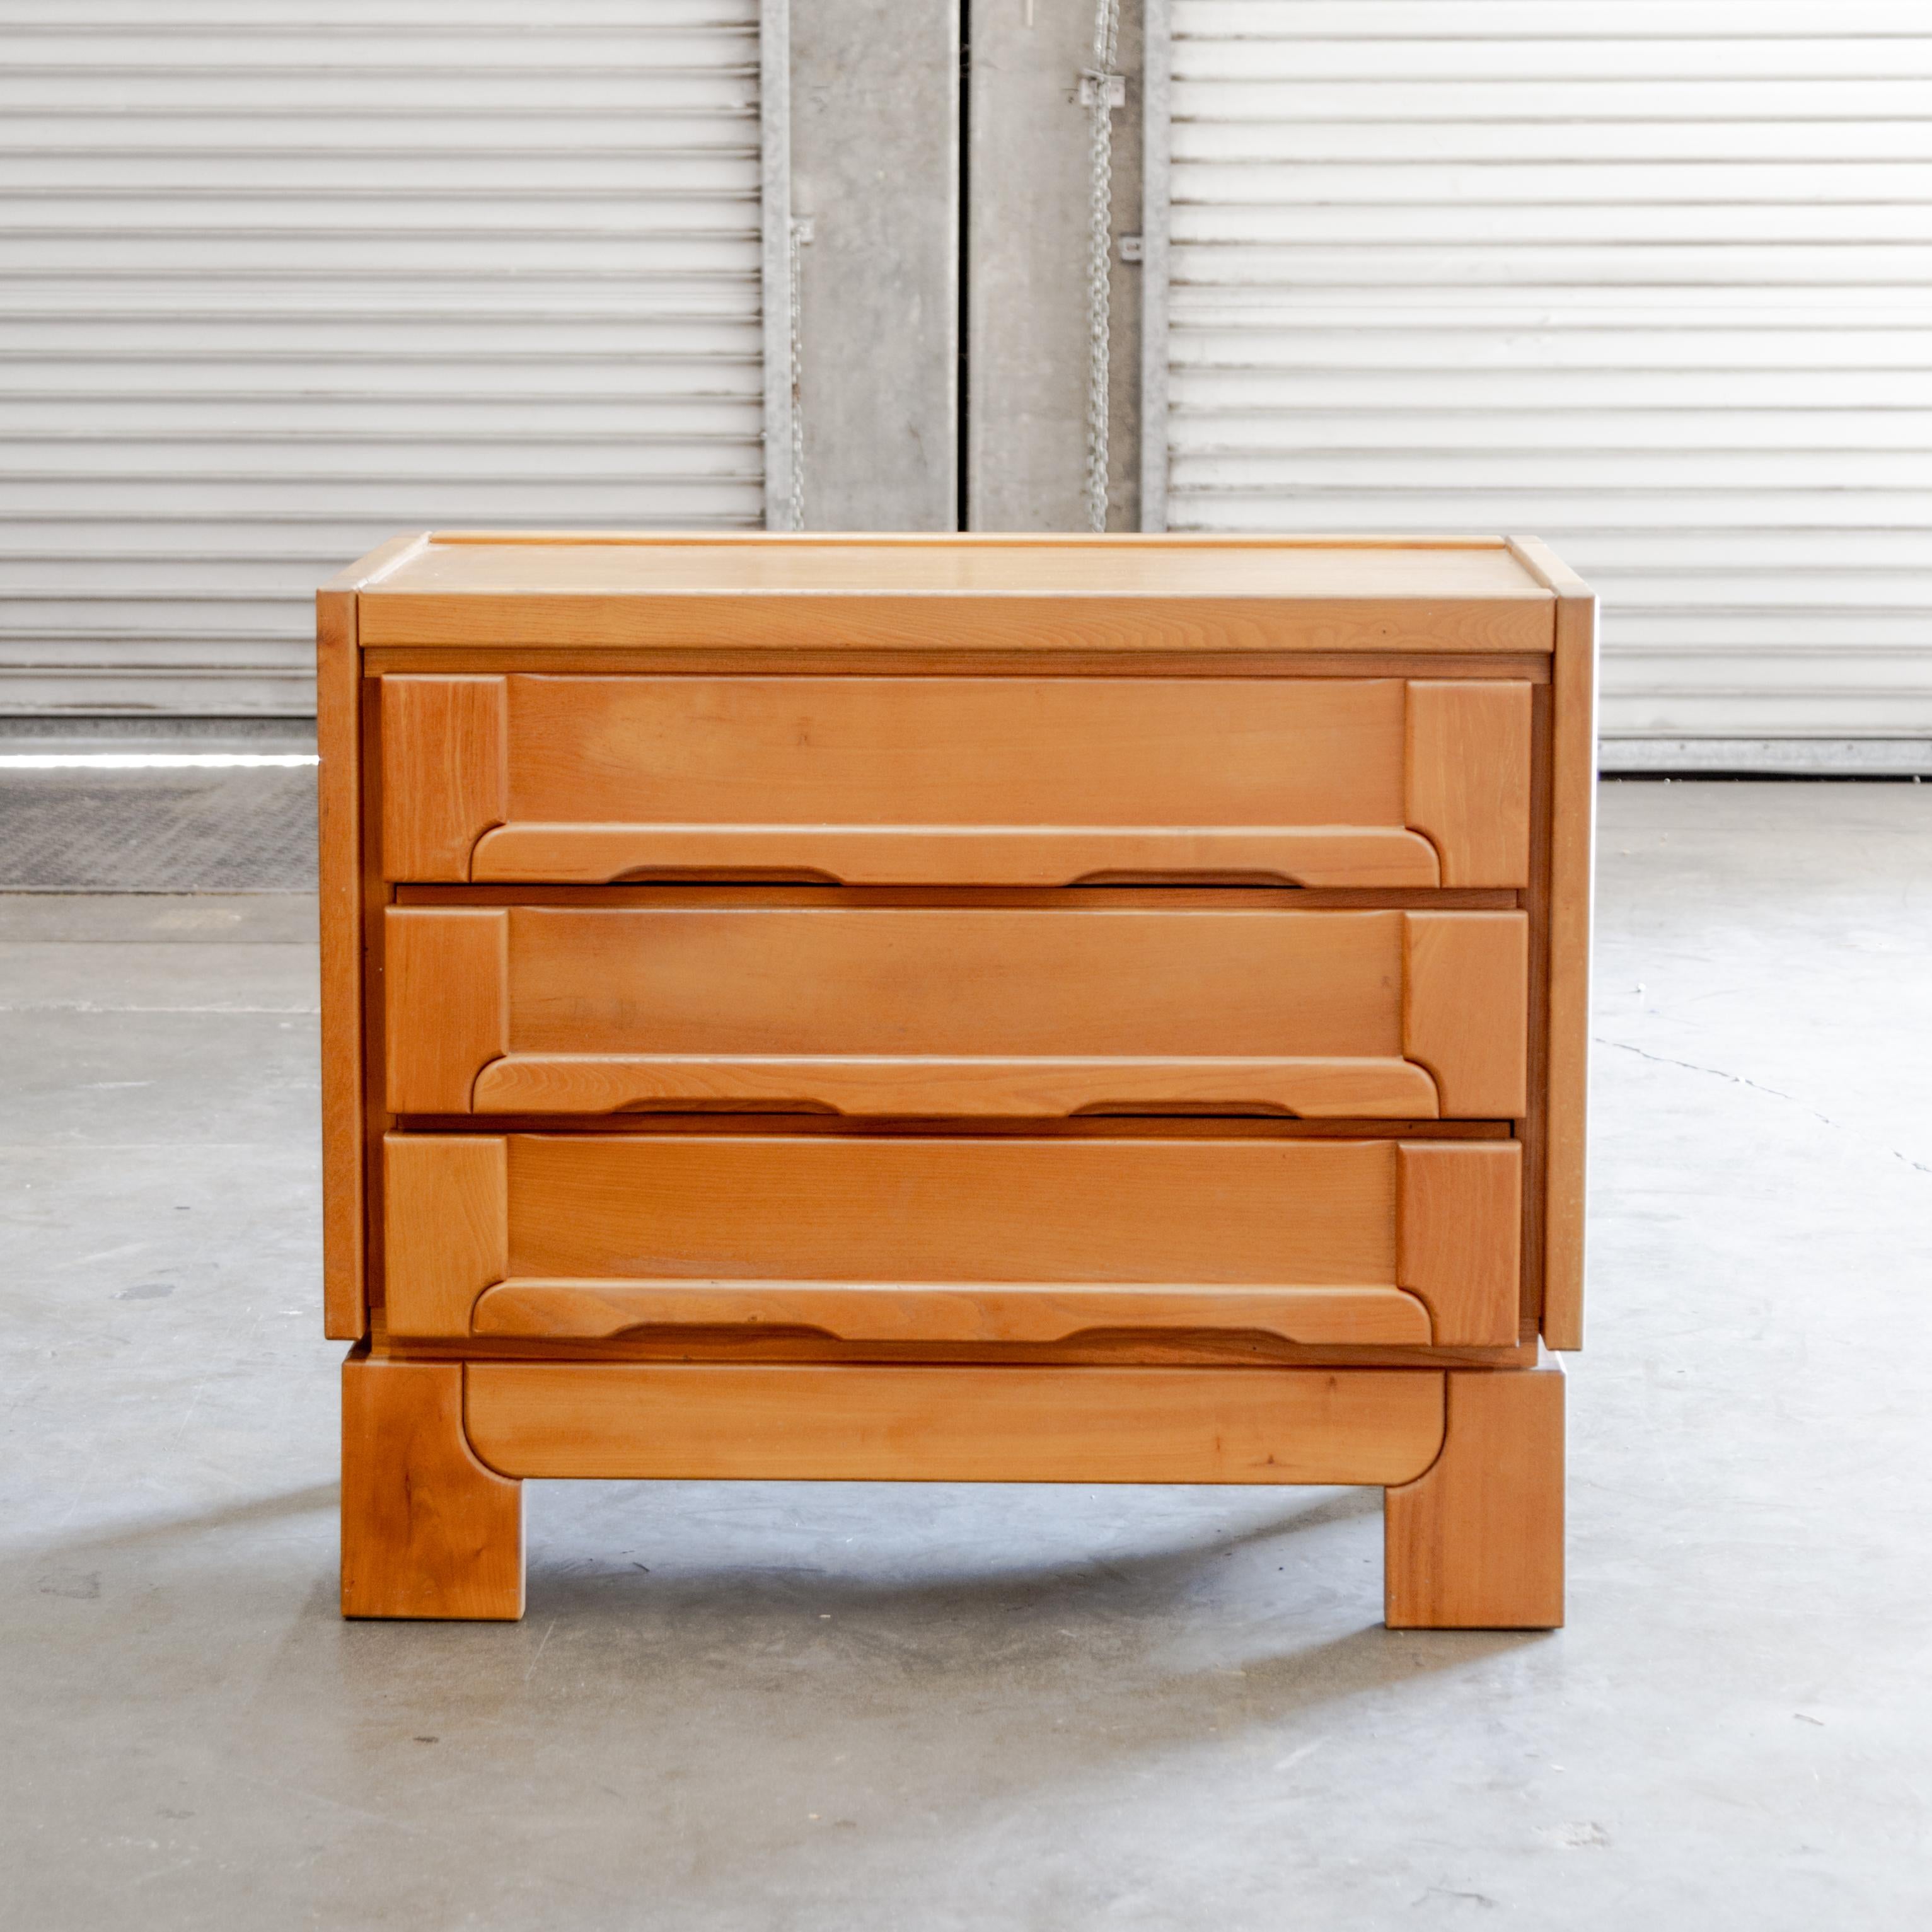 Commode à trois tiroirs en bois d'orme de la Maison Regain, avec détails d'assemblage exprimés et poignées de tiroir intégrées et sculptées, vers les années 1970 en France.